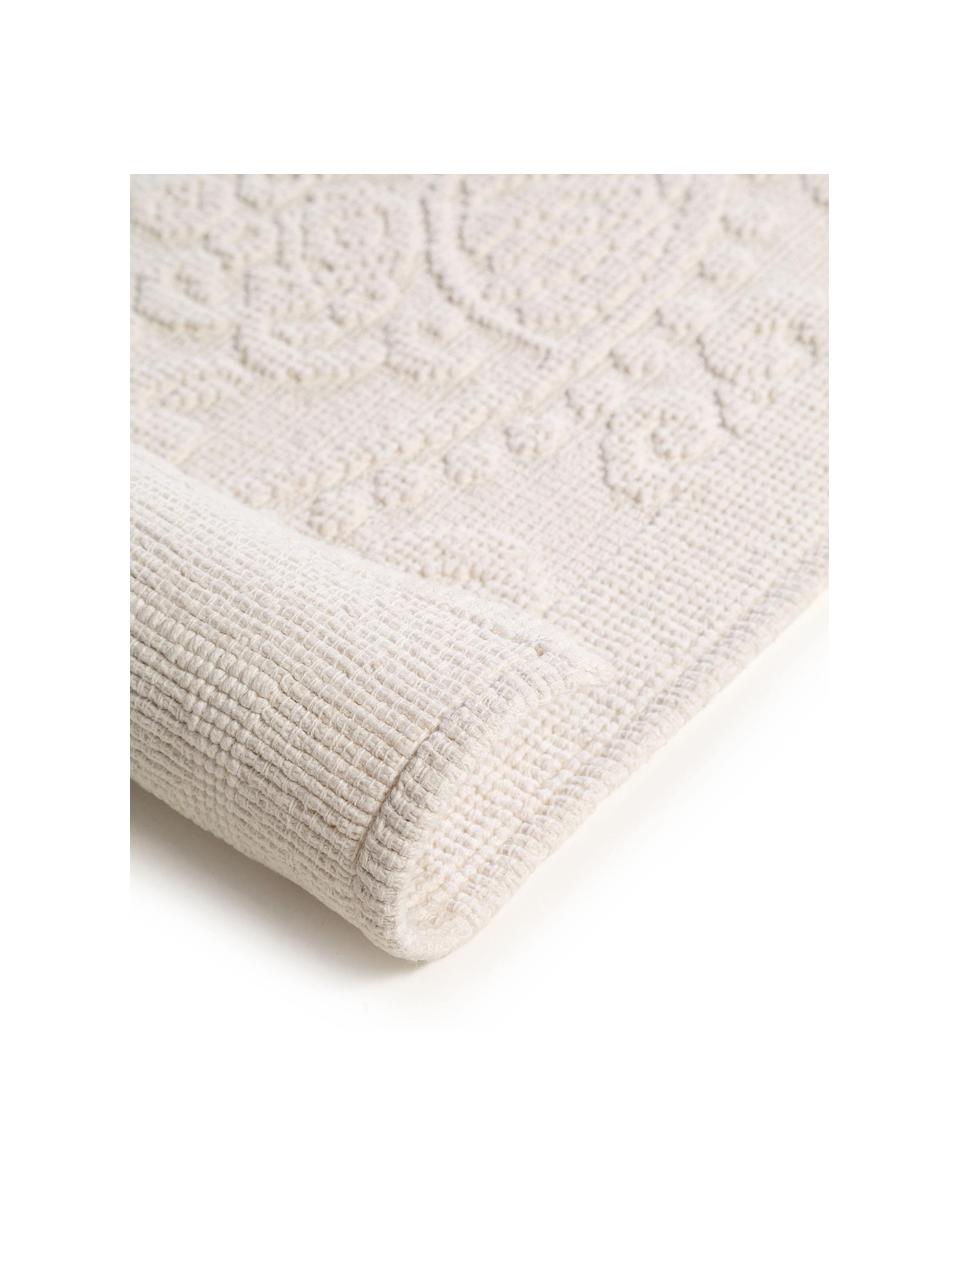 Alfombrilla de baño estampada Kaya, 100% algodón, Blanco crema, An 50 x L 80 cm